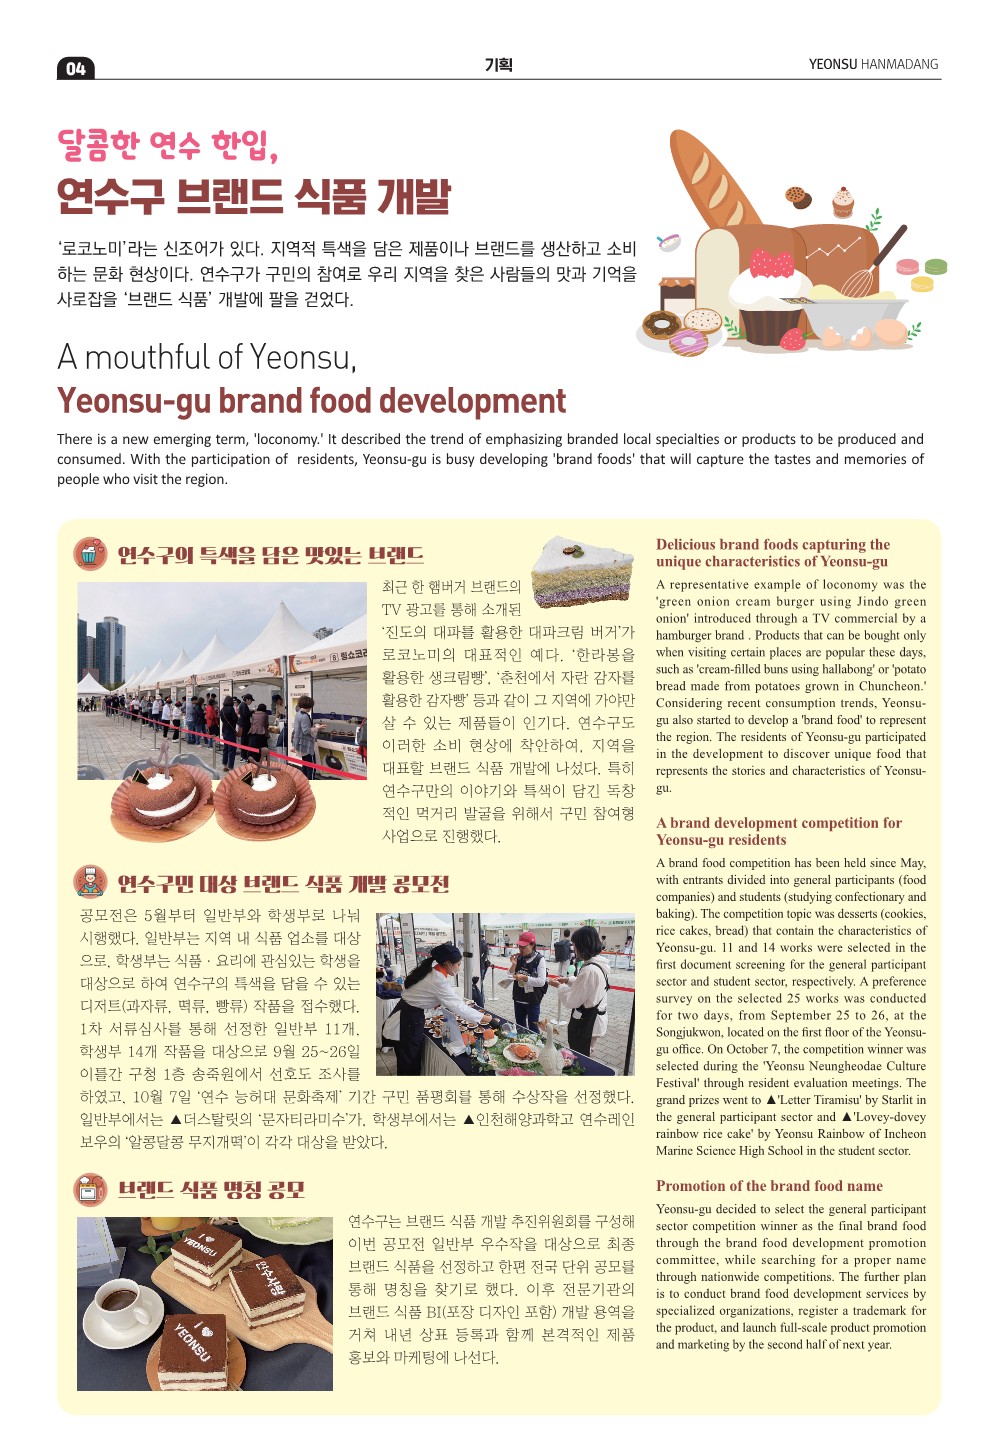 23_12월호_달콤한 연수한입, 연수구 브랜드 식품 개발의 2번째 이미지